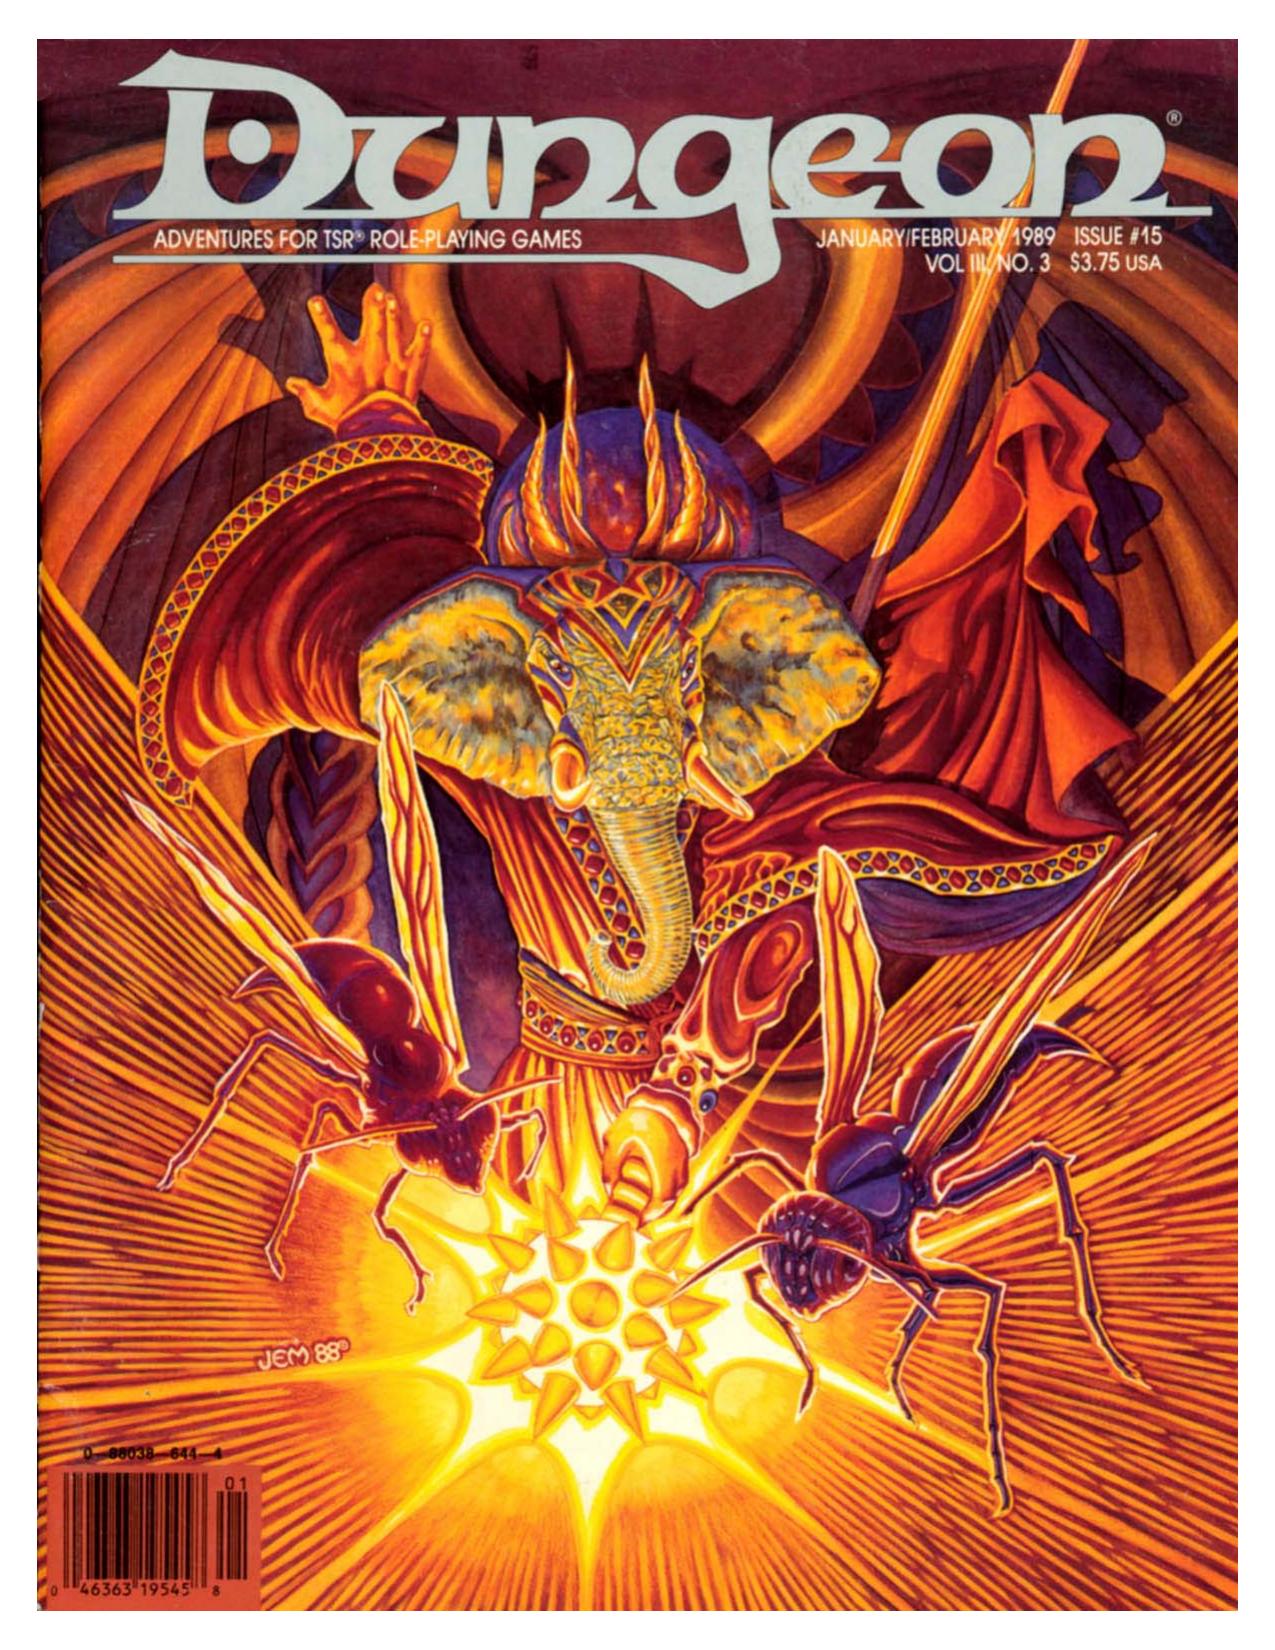 Dungeon Magazine #15 Jan/Feb 1989